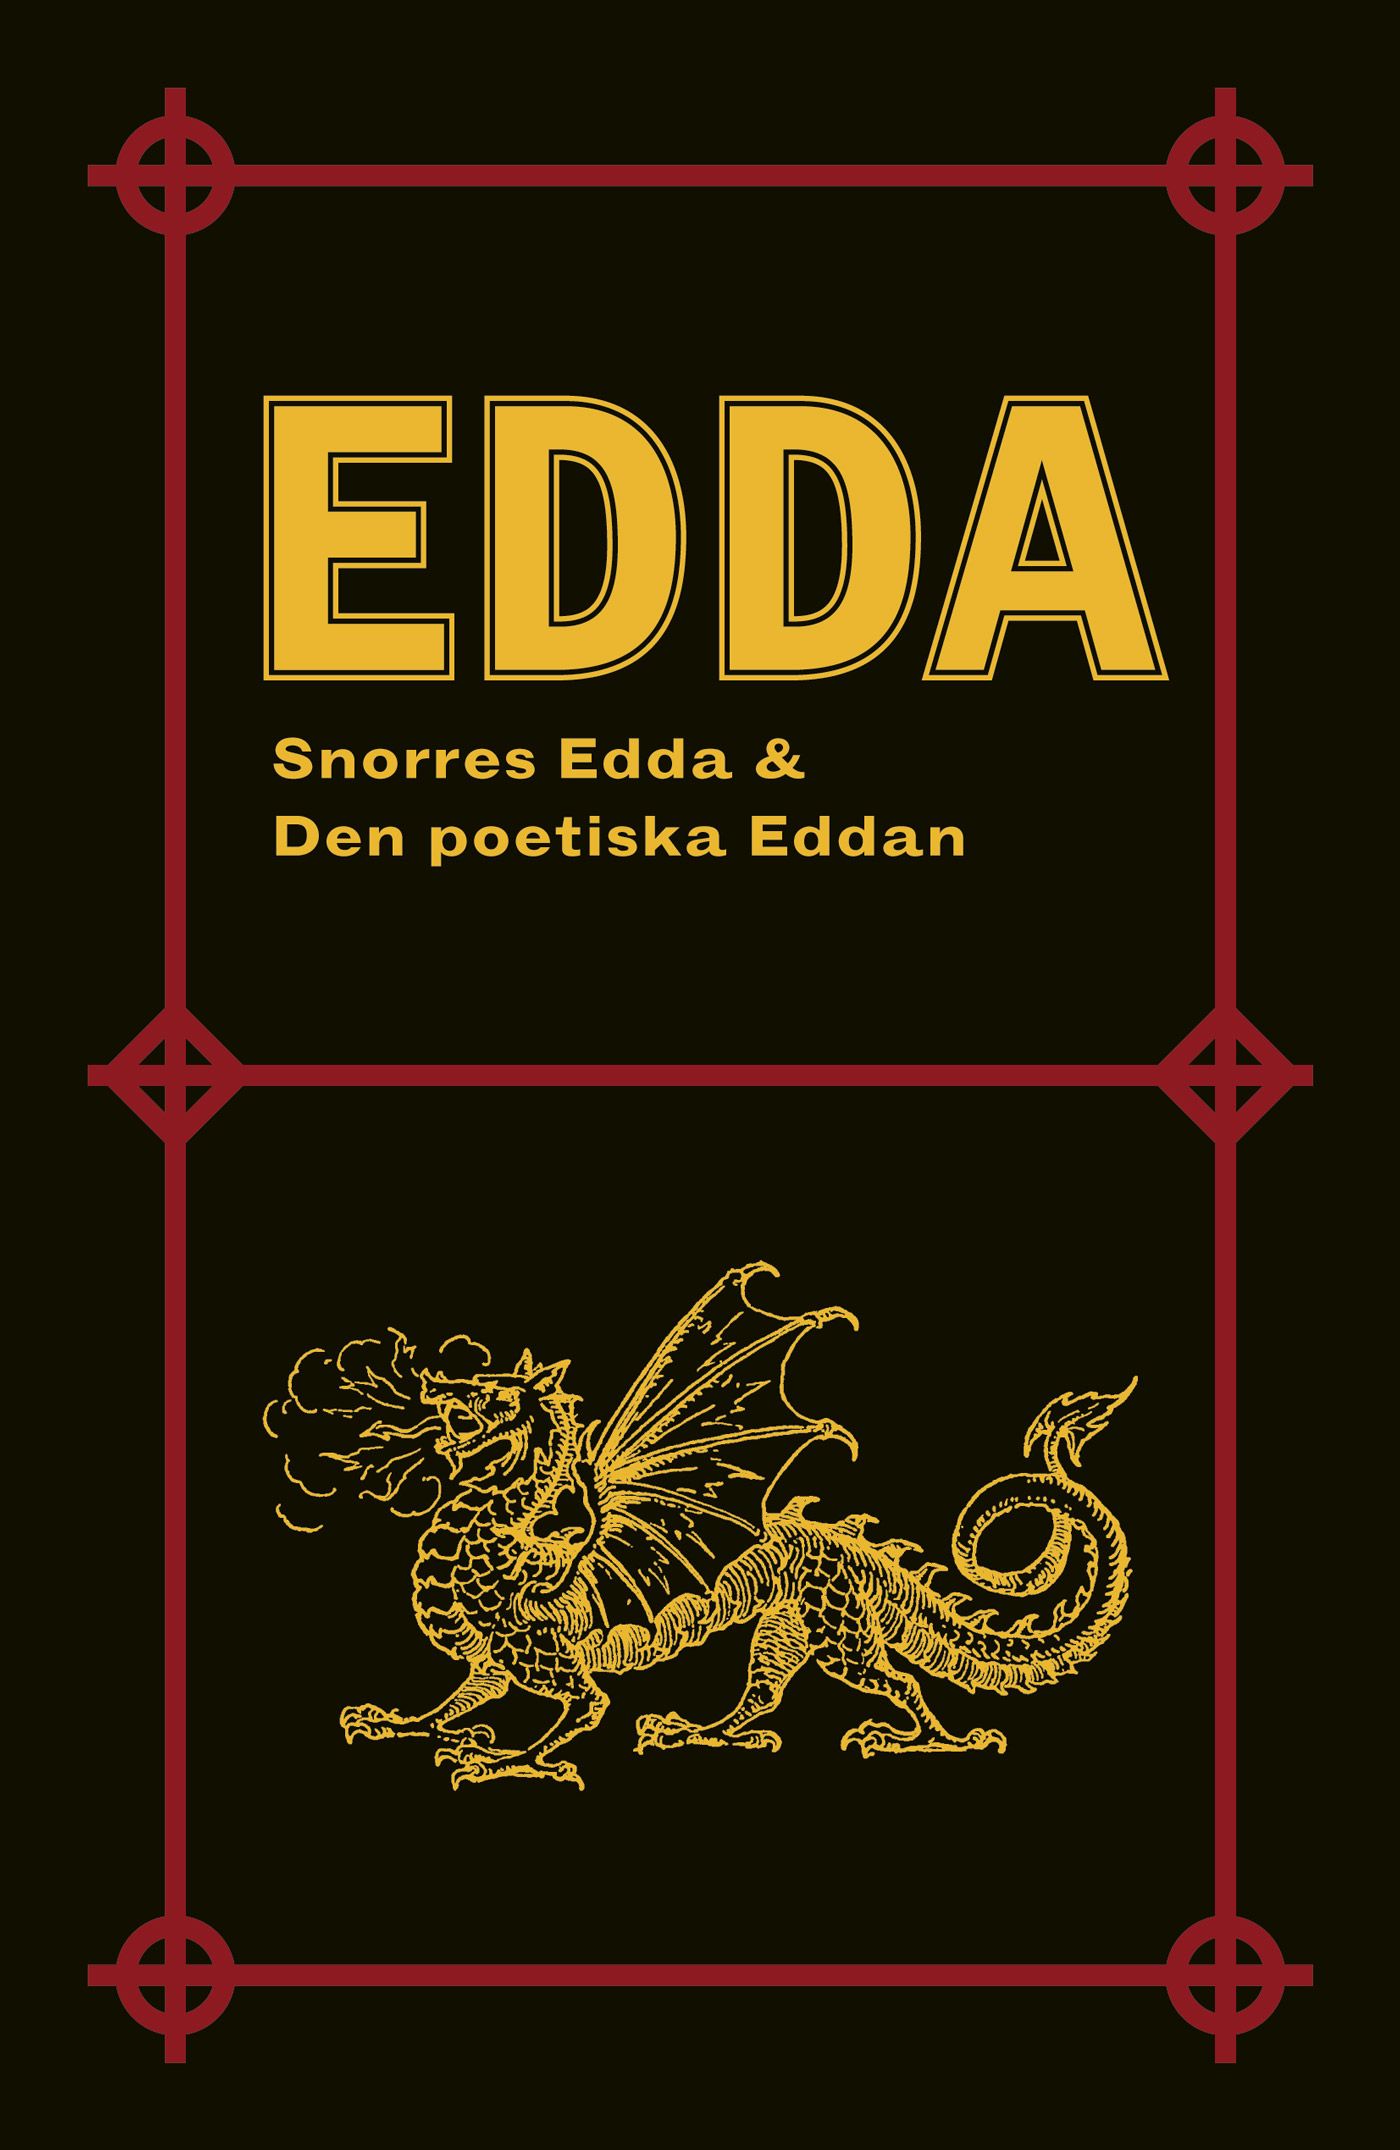 Edda: Snorres Edda & Den poetiska Eddan, e-bog af Peter August Gödecke, Snorre Sturlasson